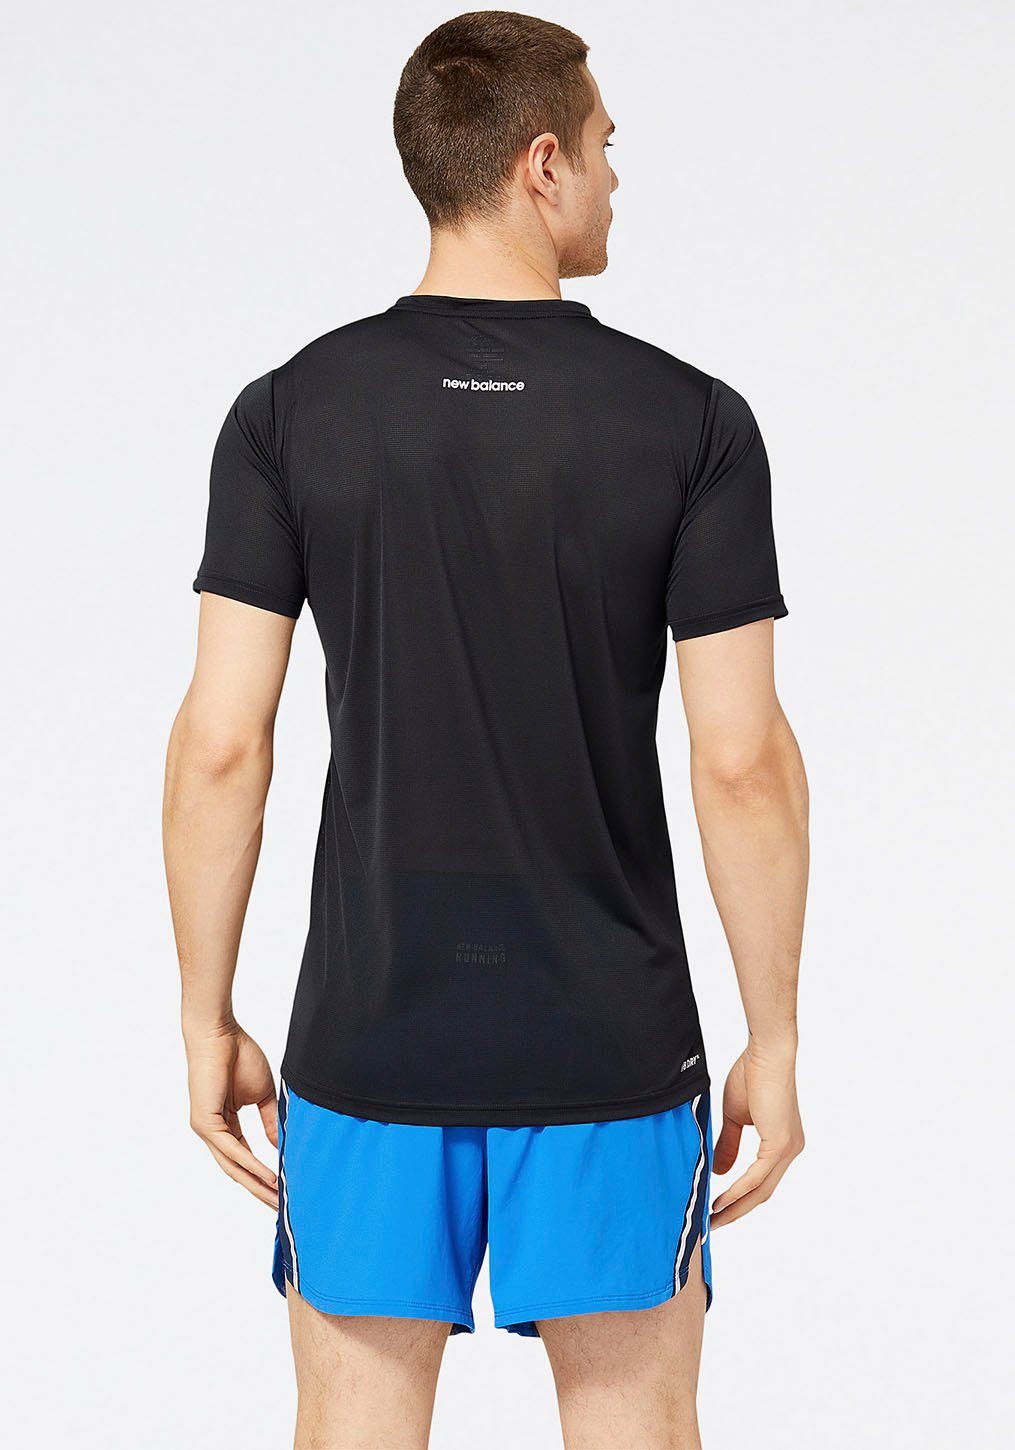 Balance T-Shirt ACCELERATE New schwarz SLEEVE SHORT